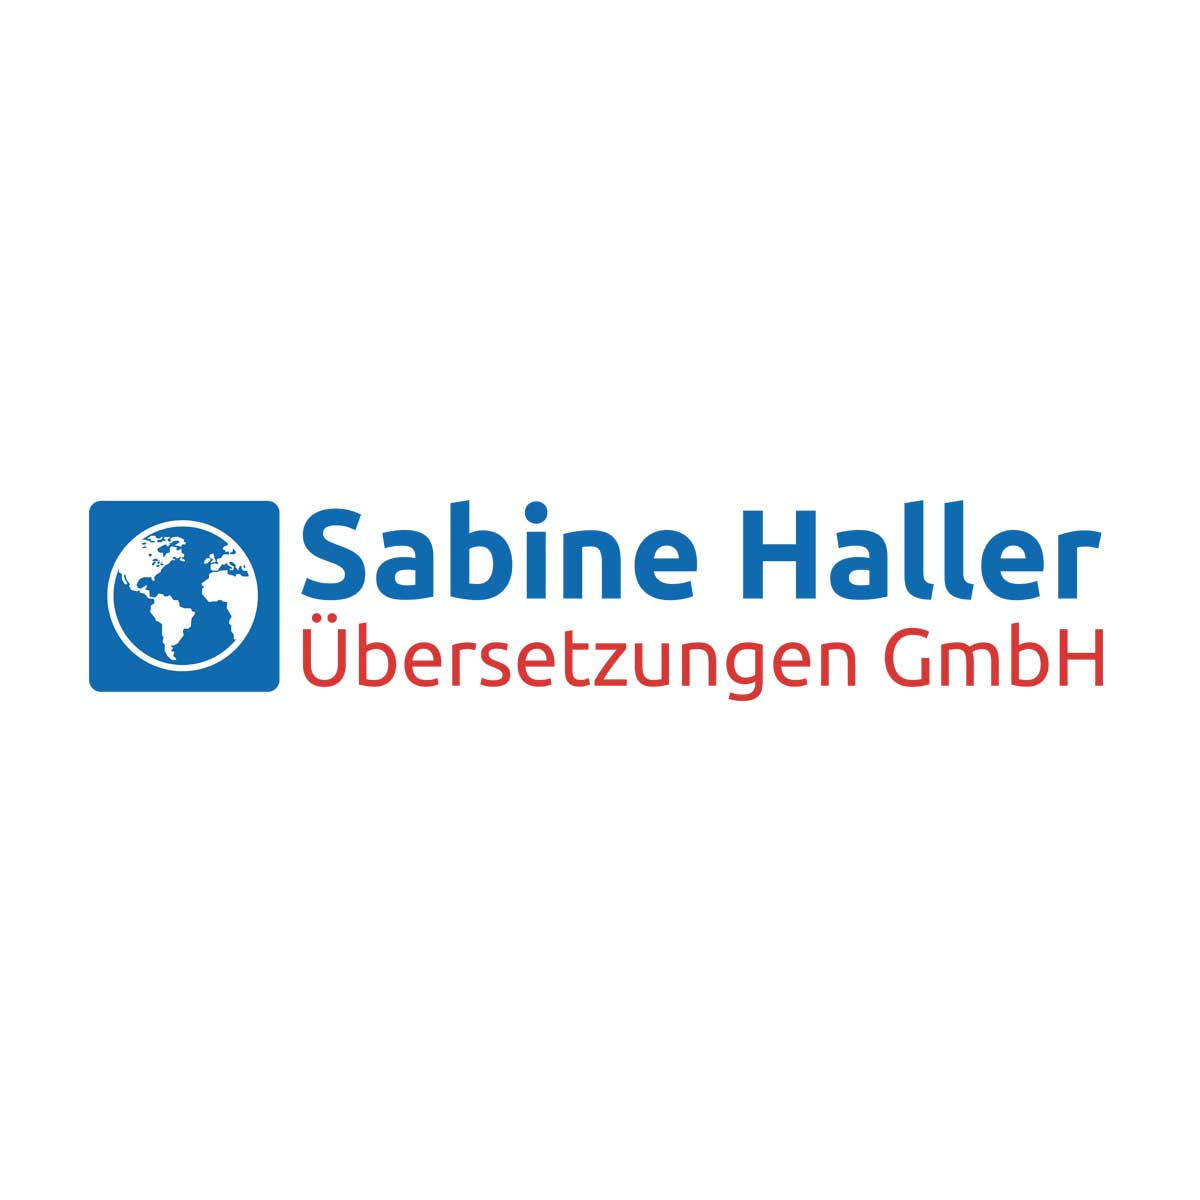 (c) Sabine-haller.de